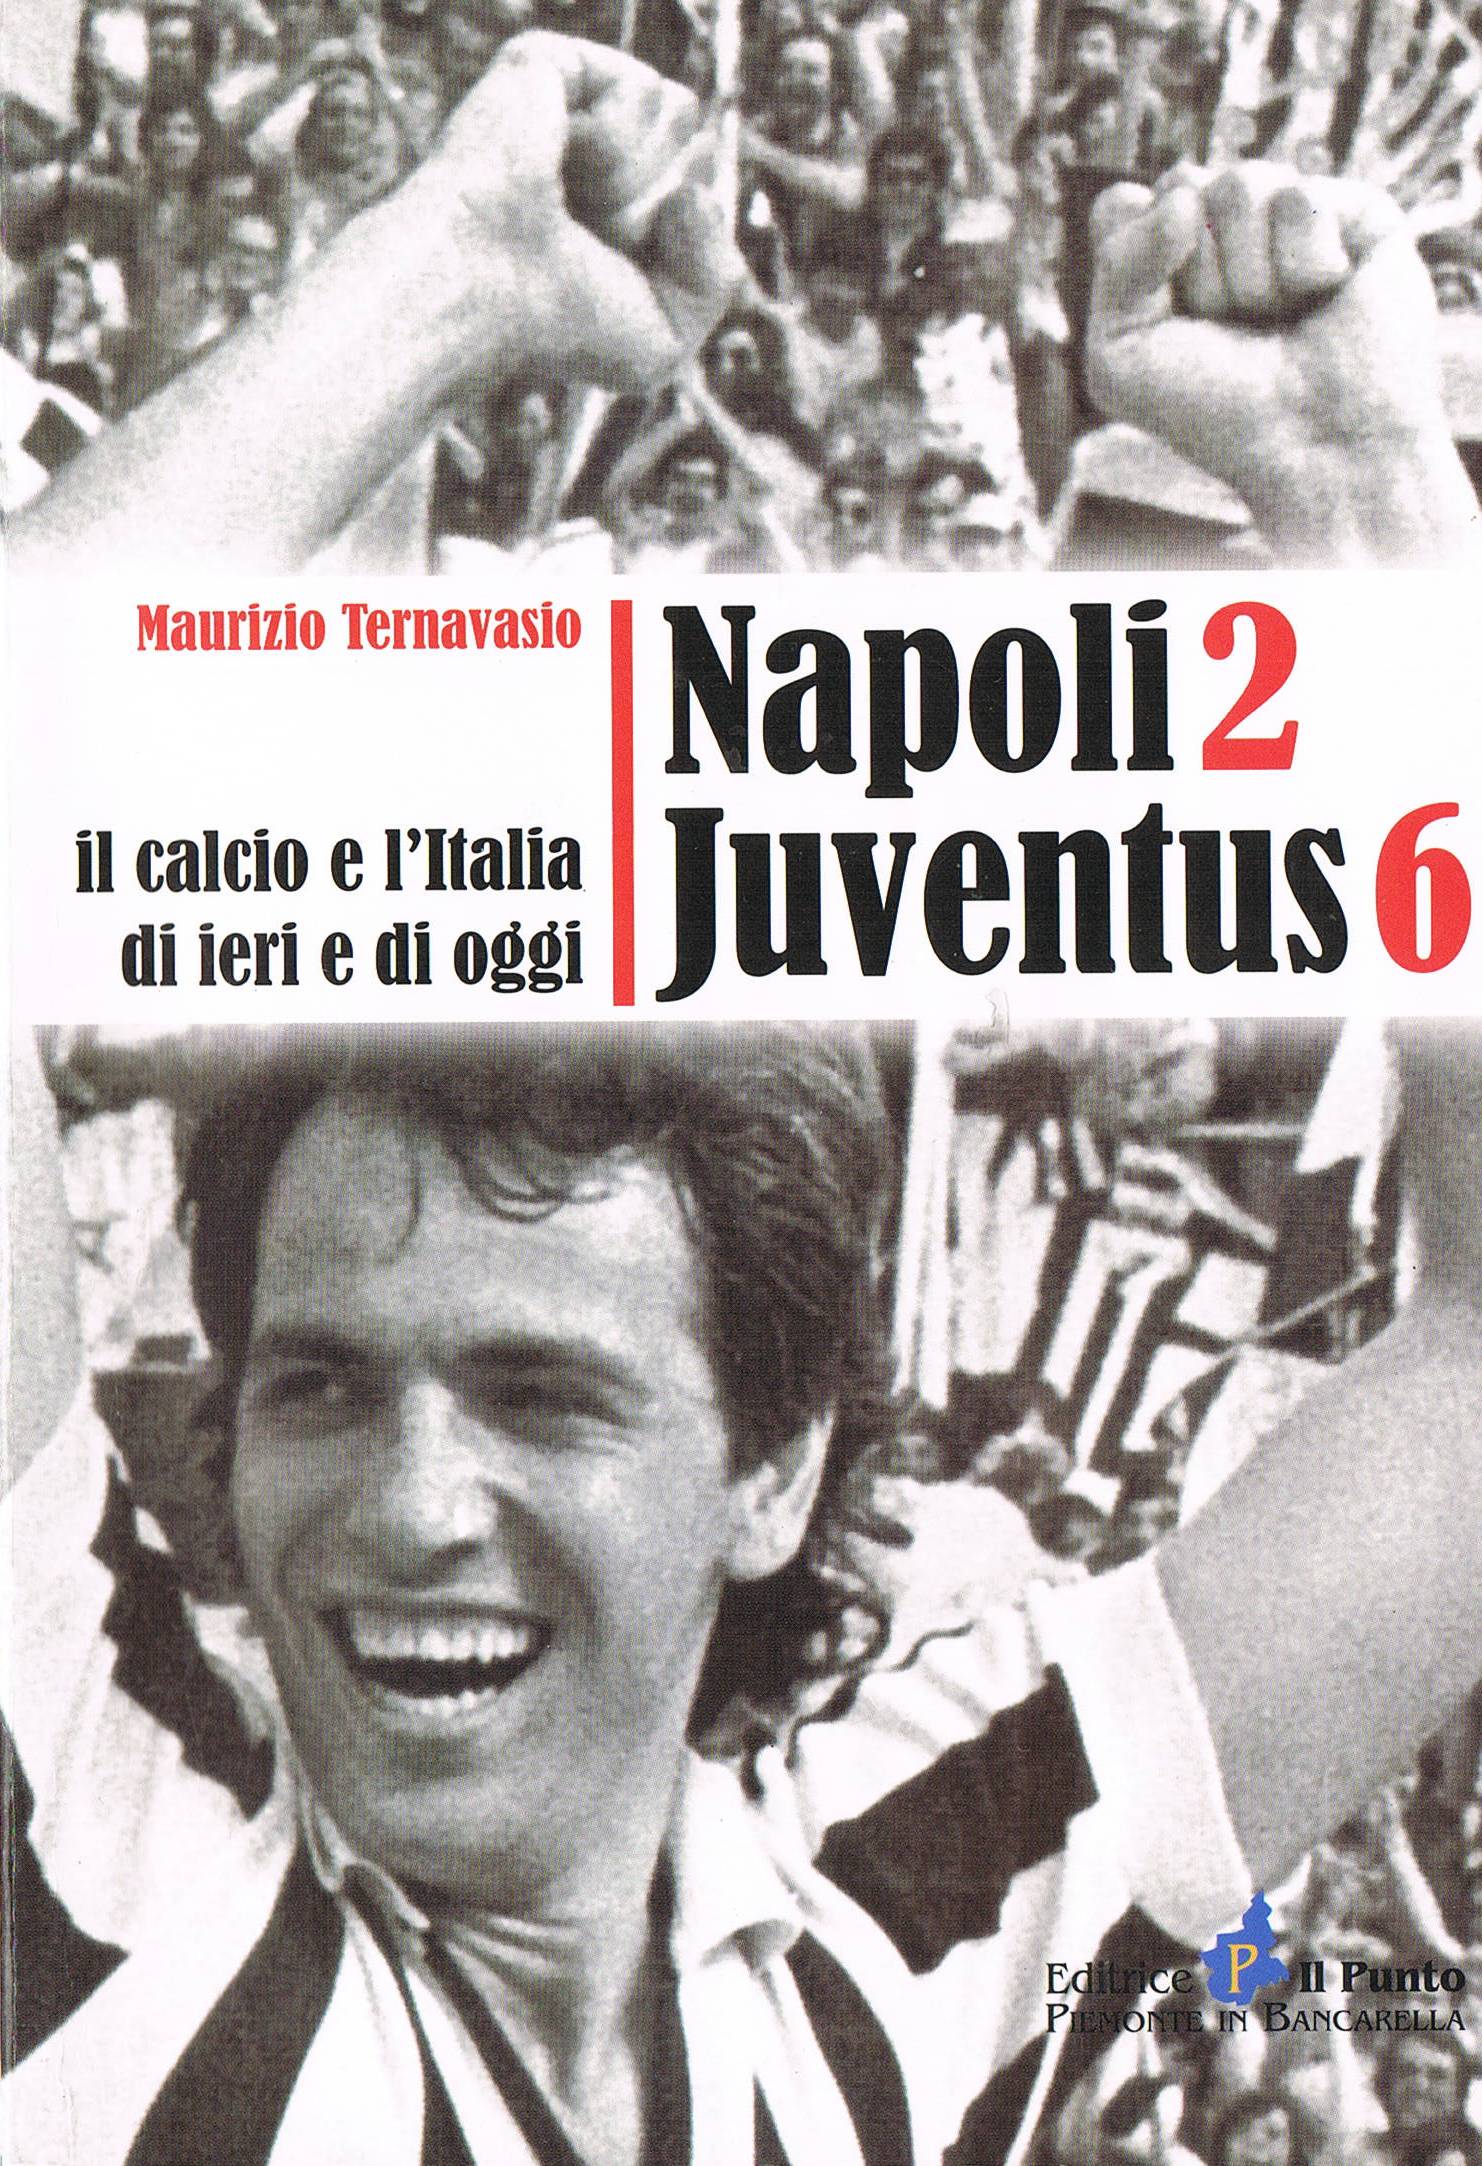 Un libro su quel maledetto Napoli-Juventus 2-6 e l’interrogatorio di Vinicio sul modulo